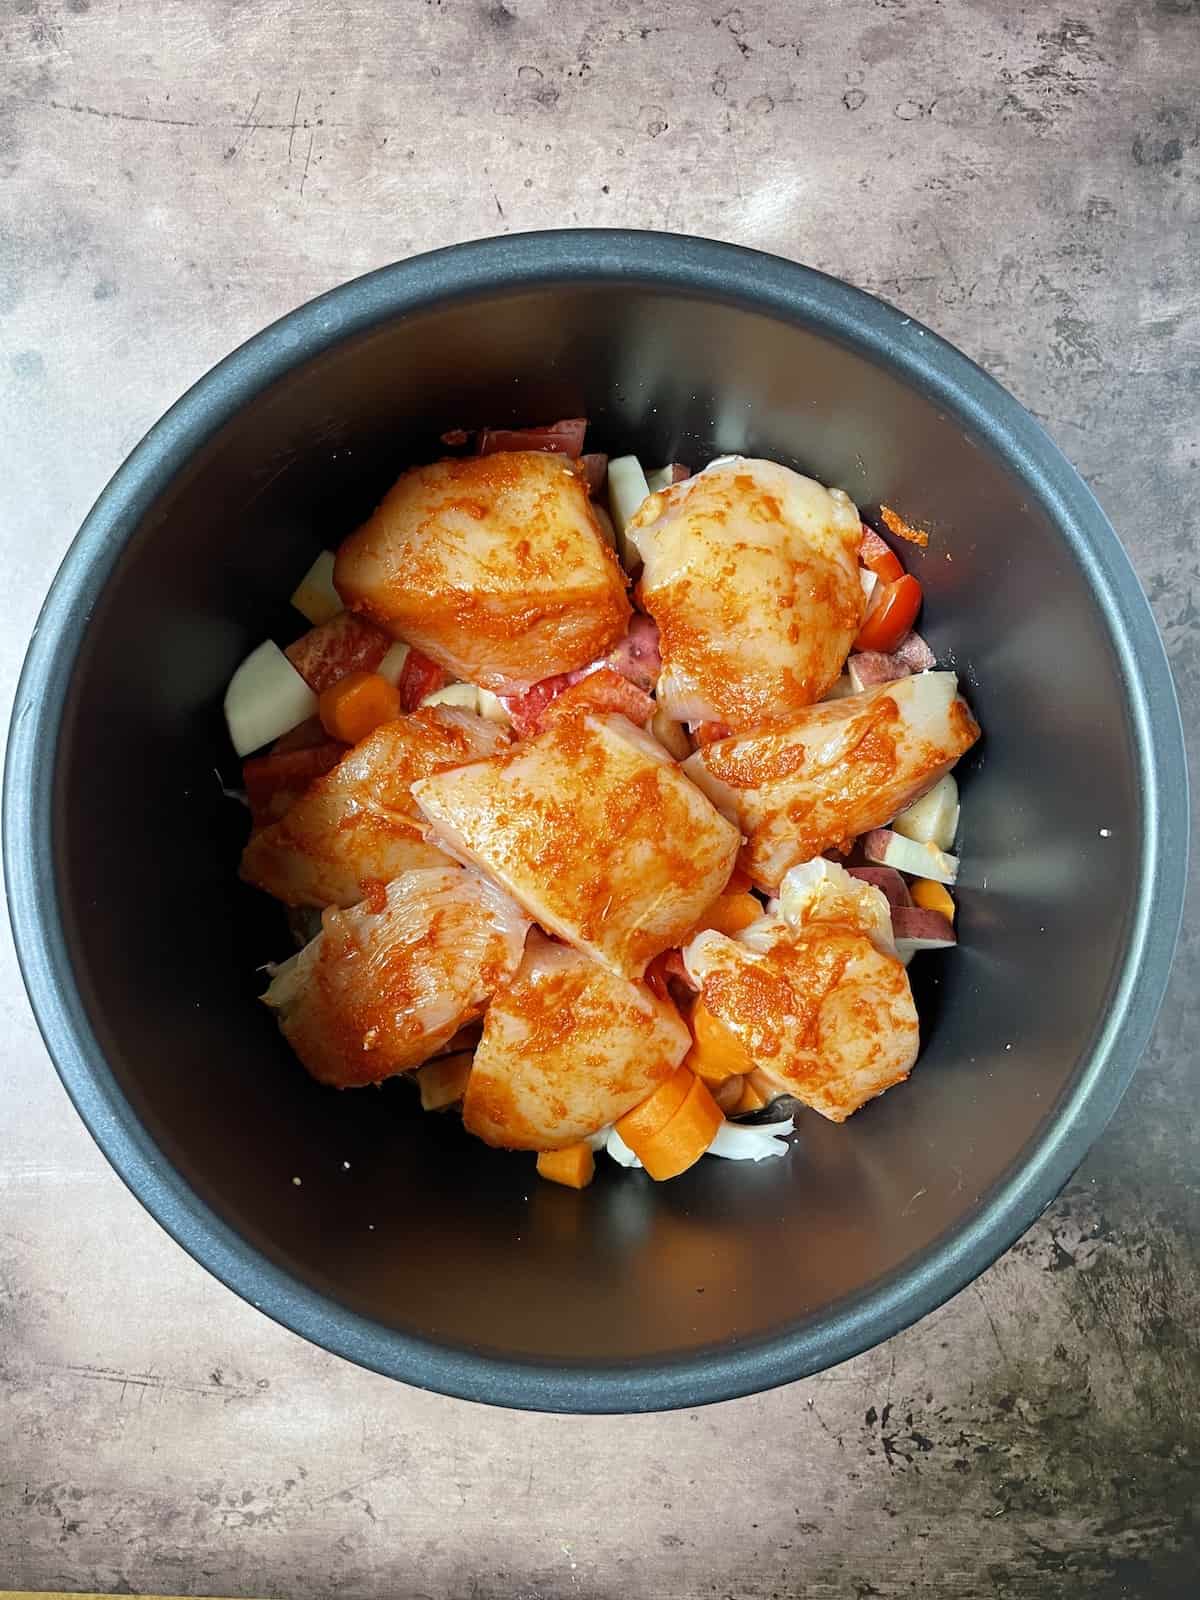 Chicken on top of veggies in slow cooker.